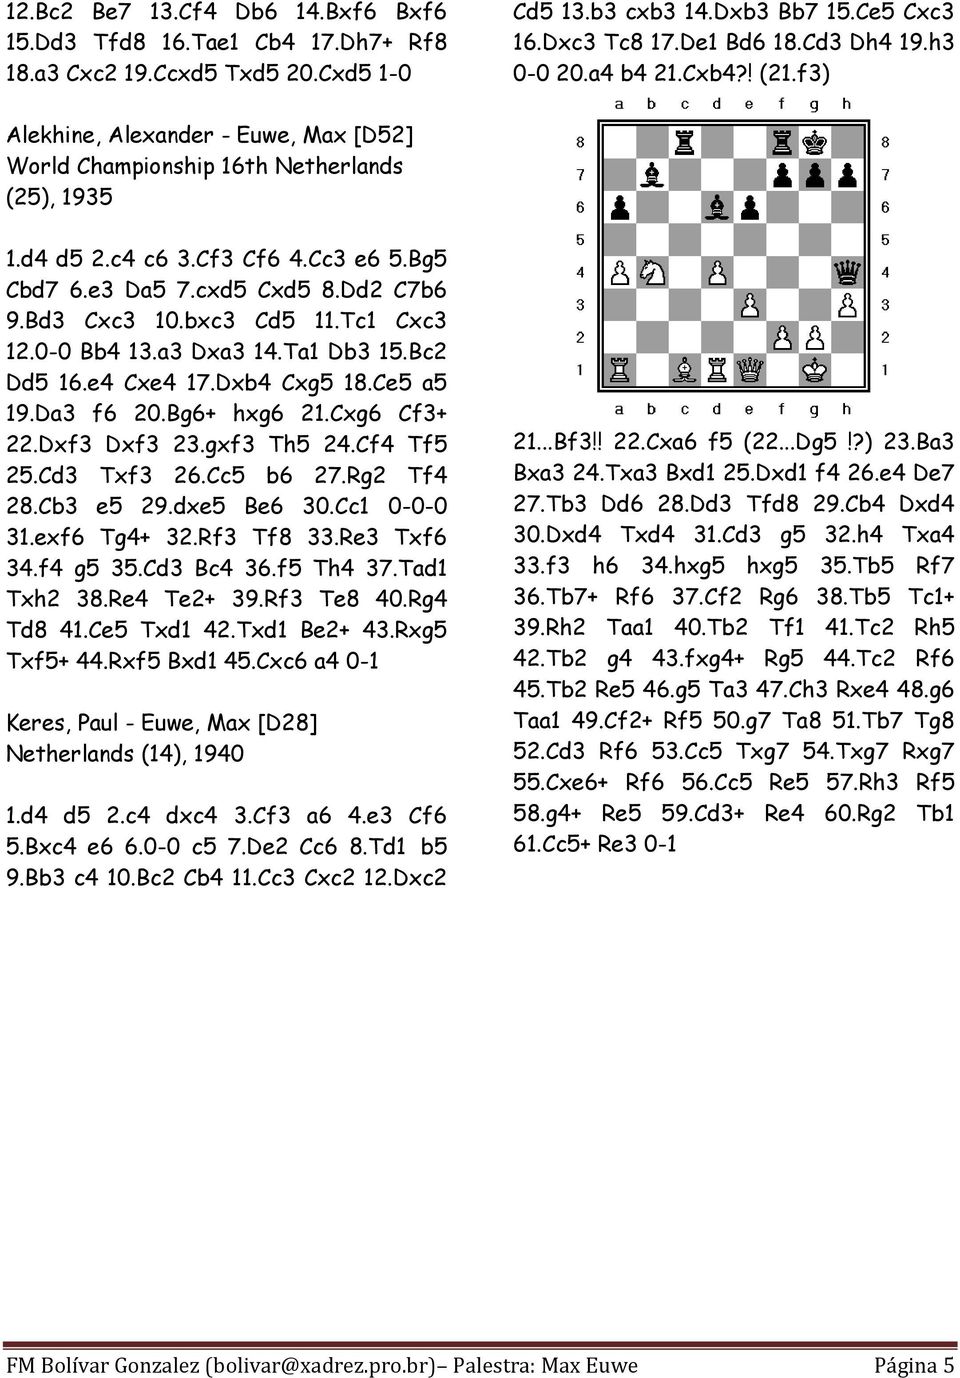 Aprenda Aberturas de Xadrez - Defesa Holandesa  Nessa aula o GM Evandro  Barbosa explica uma defesa para você jogar contra o lance 1.d4 que é a  defesa holandesa. Durante a aula